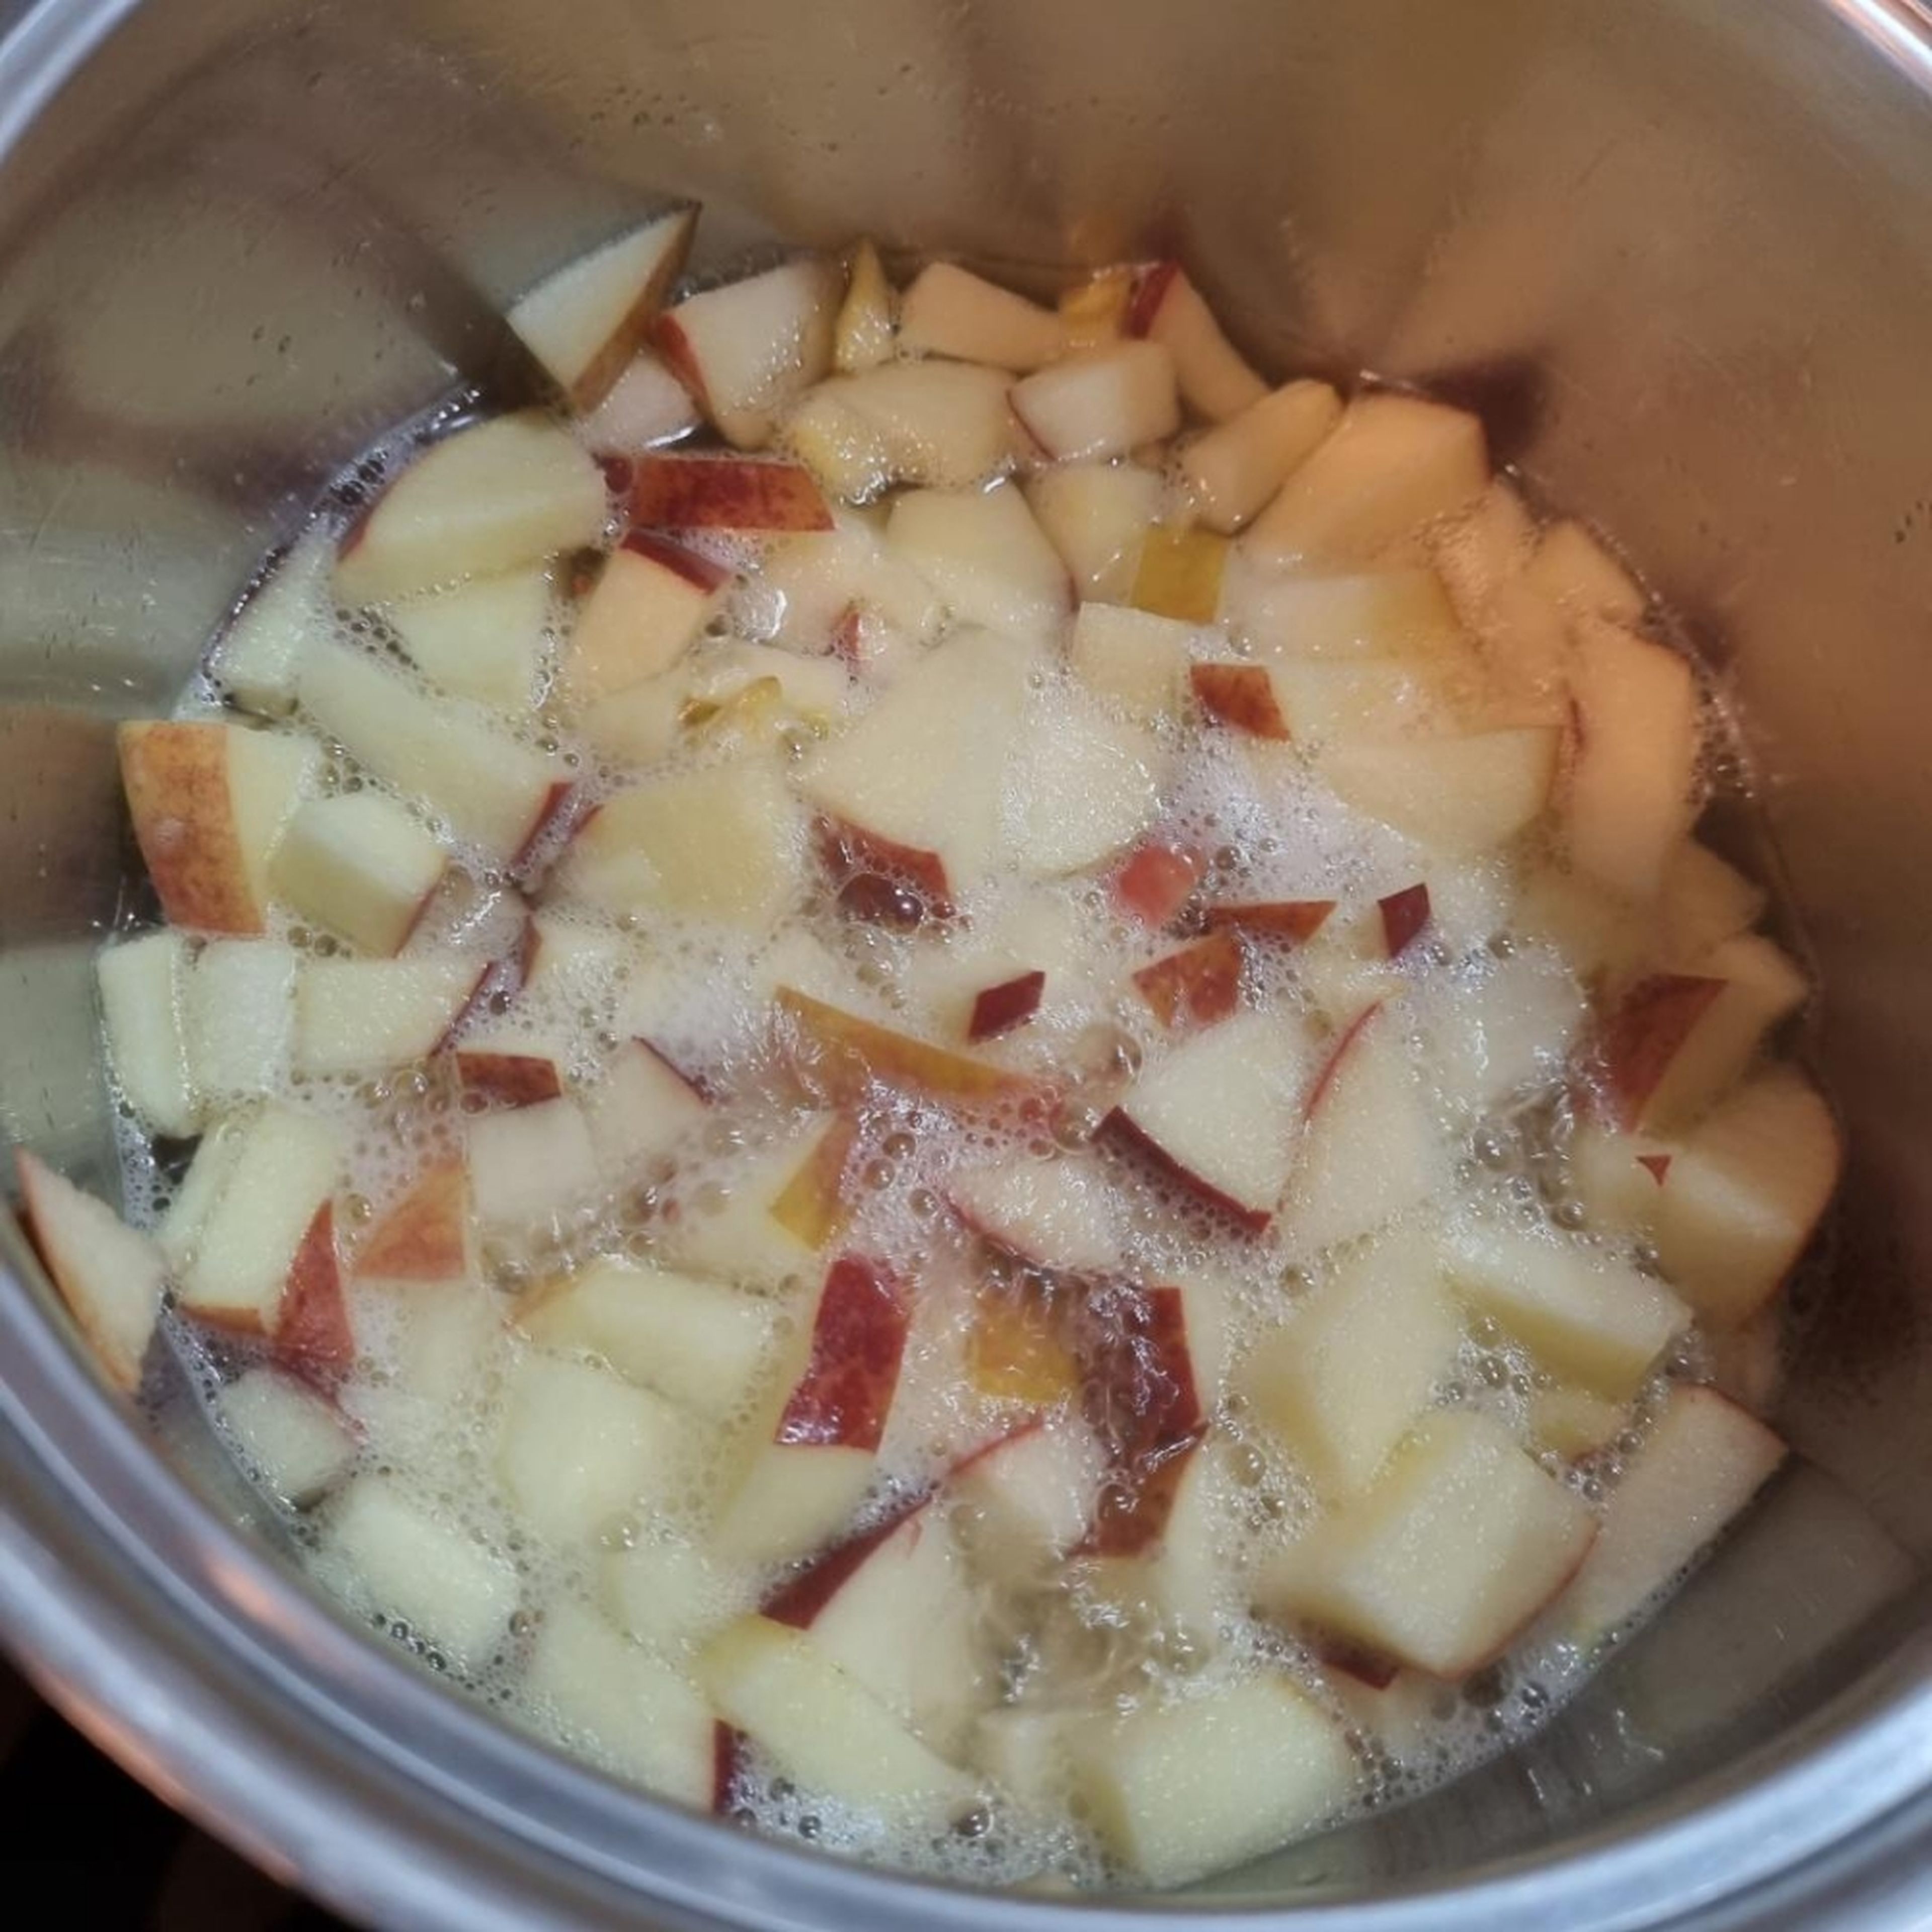 Den geschnittenen Apfel in ein Kochtopf geben, Zucker, Zitronensaft und ein bisschen von dem Wasser dazugeben. Das alles kurz zusammen aufkochen lassen.